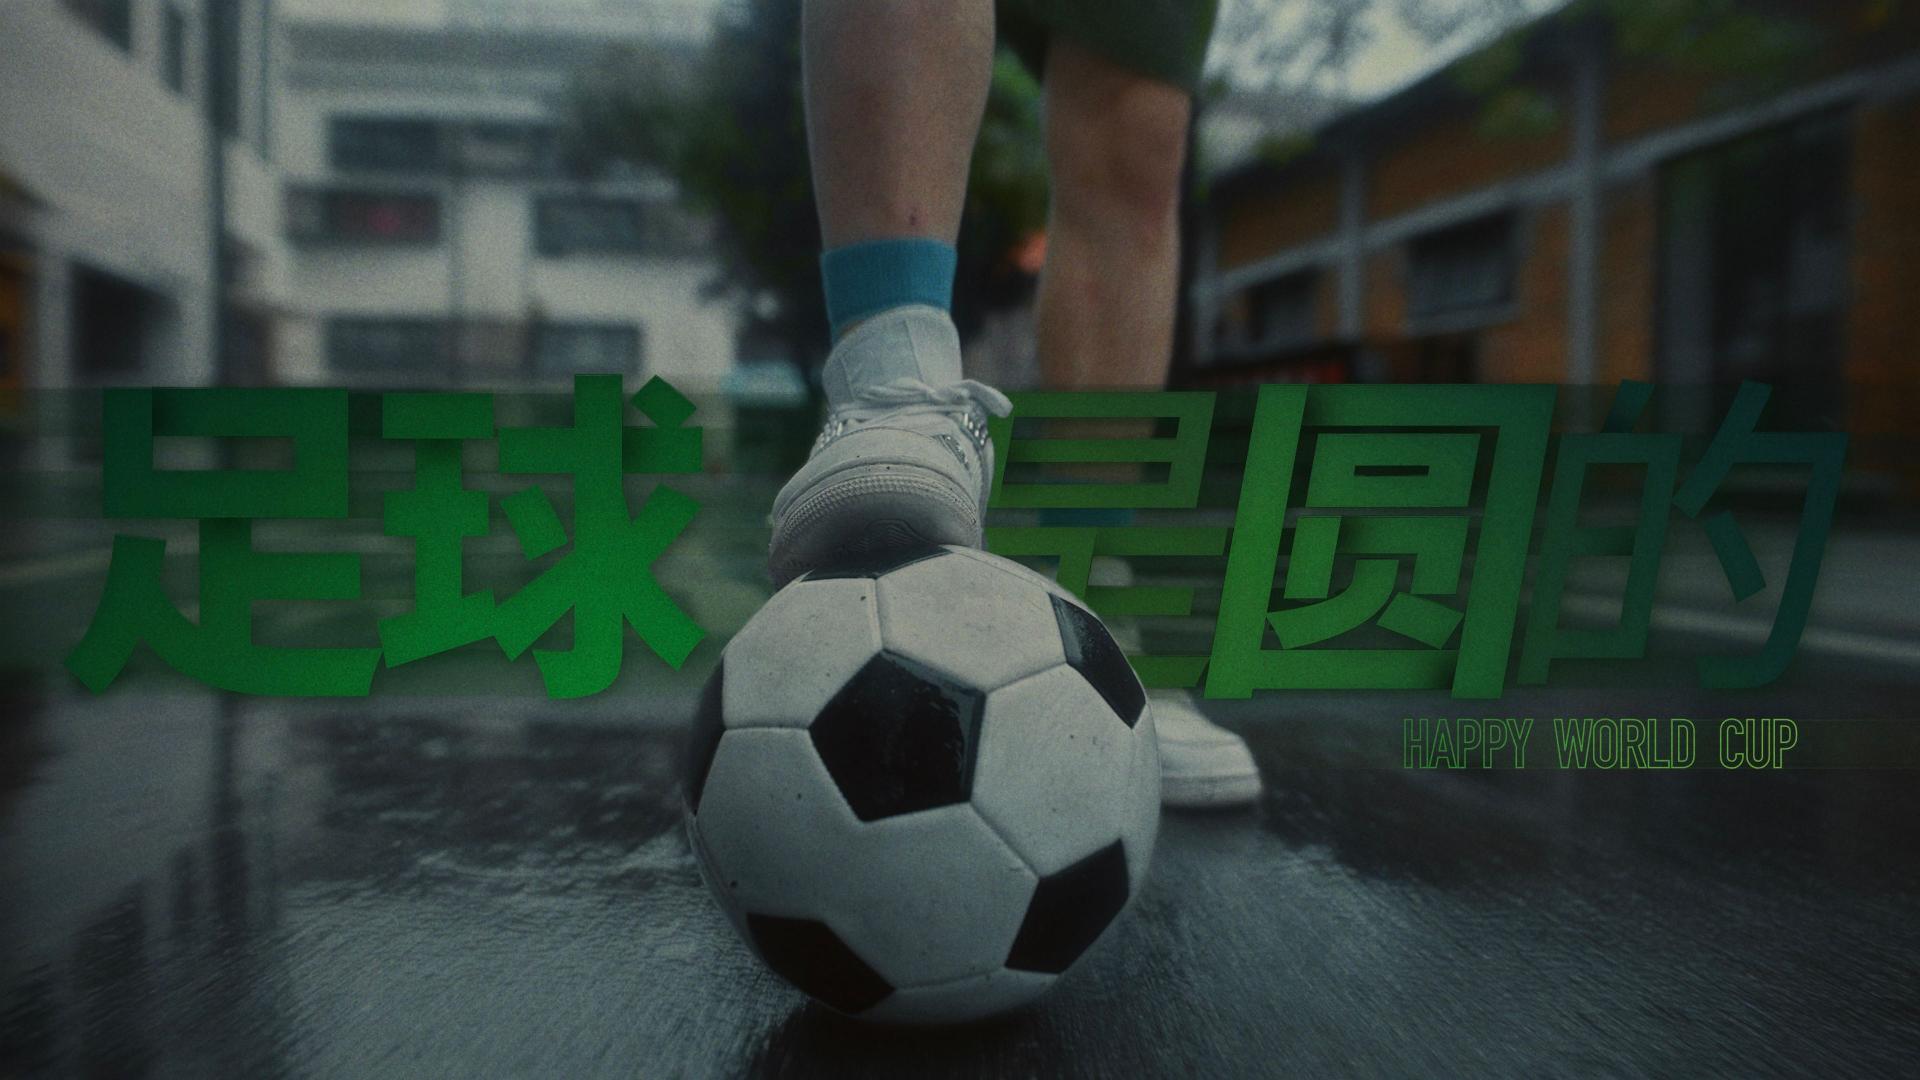 足球是圆的 - 广东综艺4K频道开心世界杯宣传片_Dir版